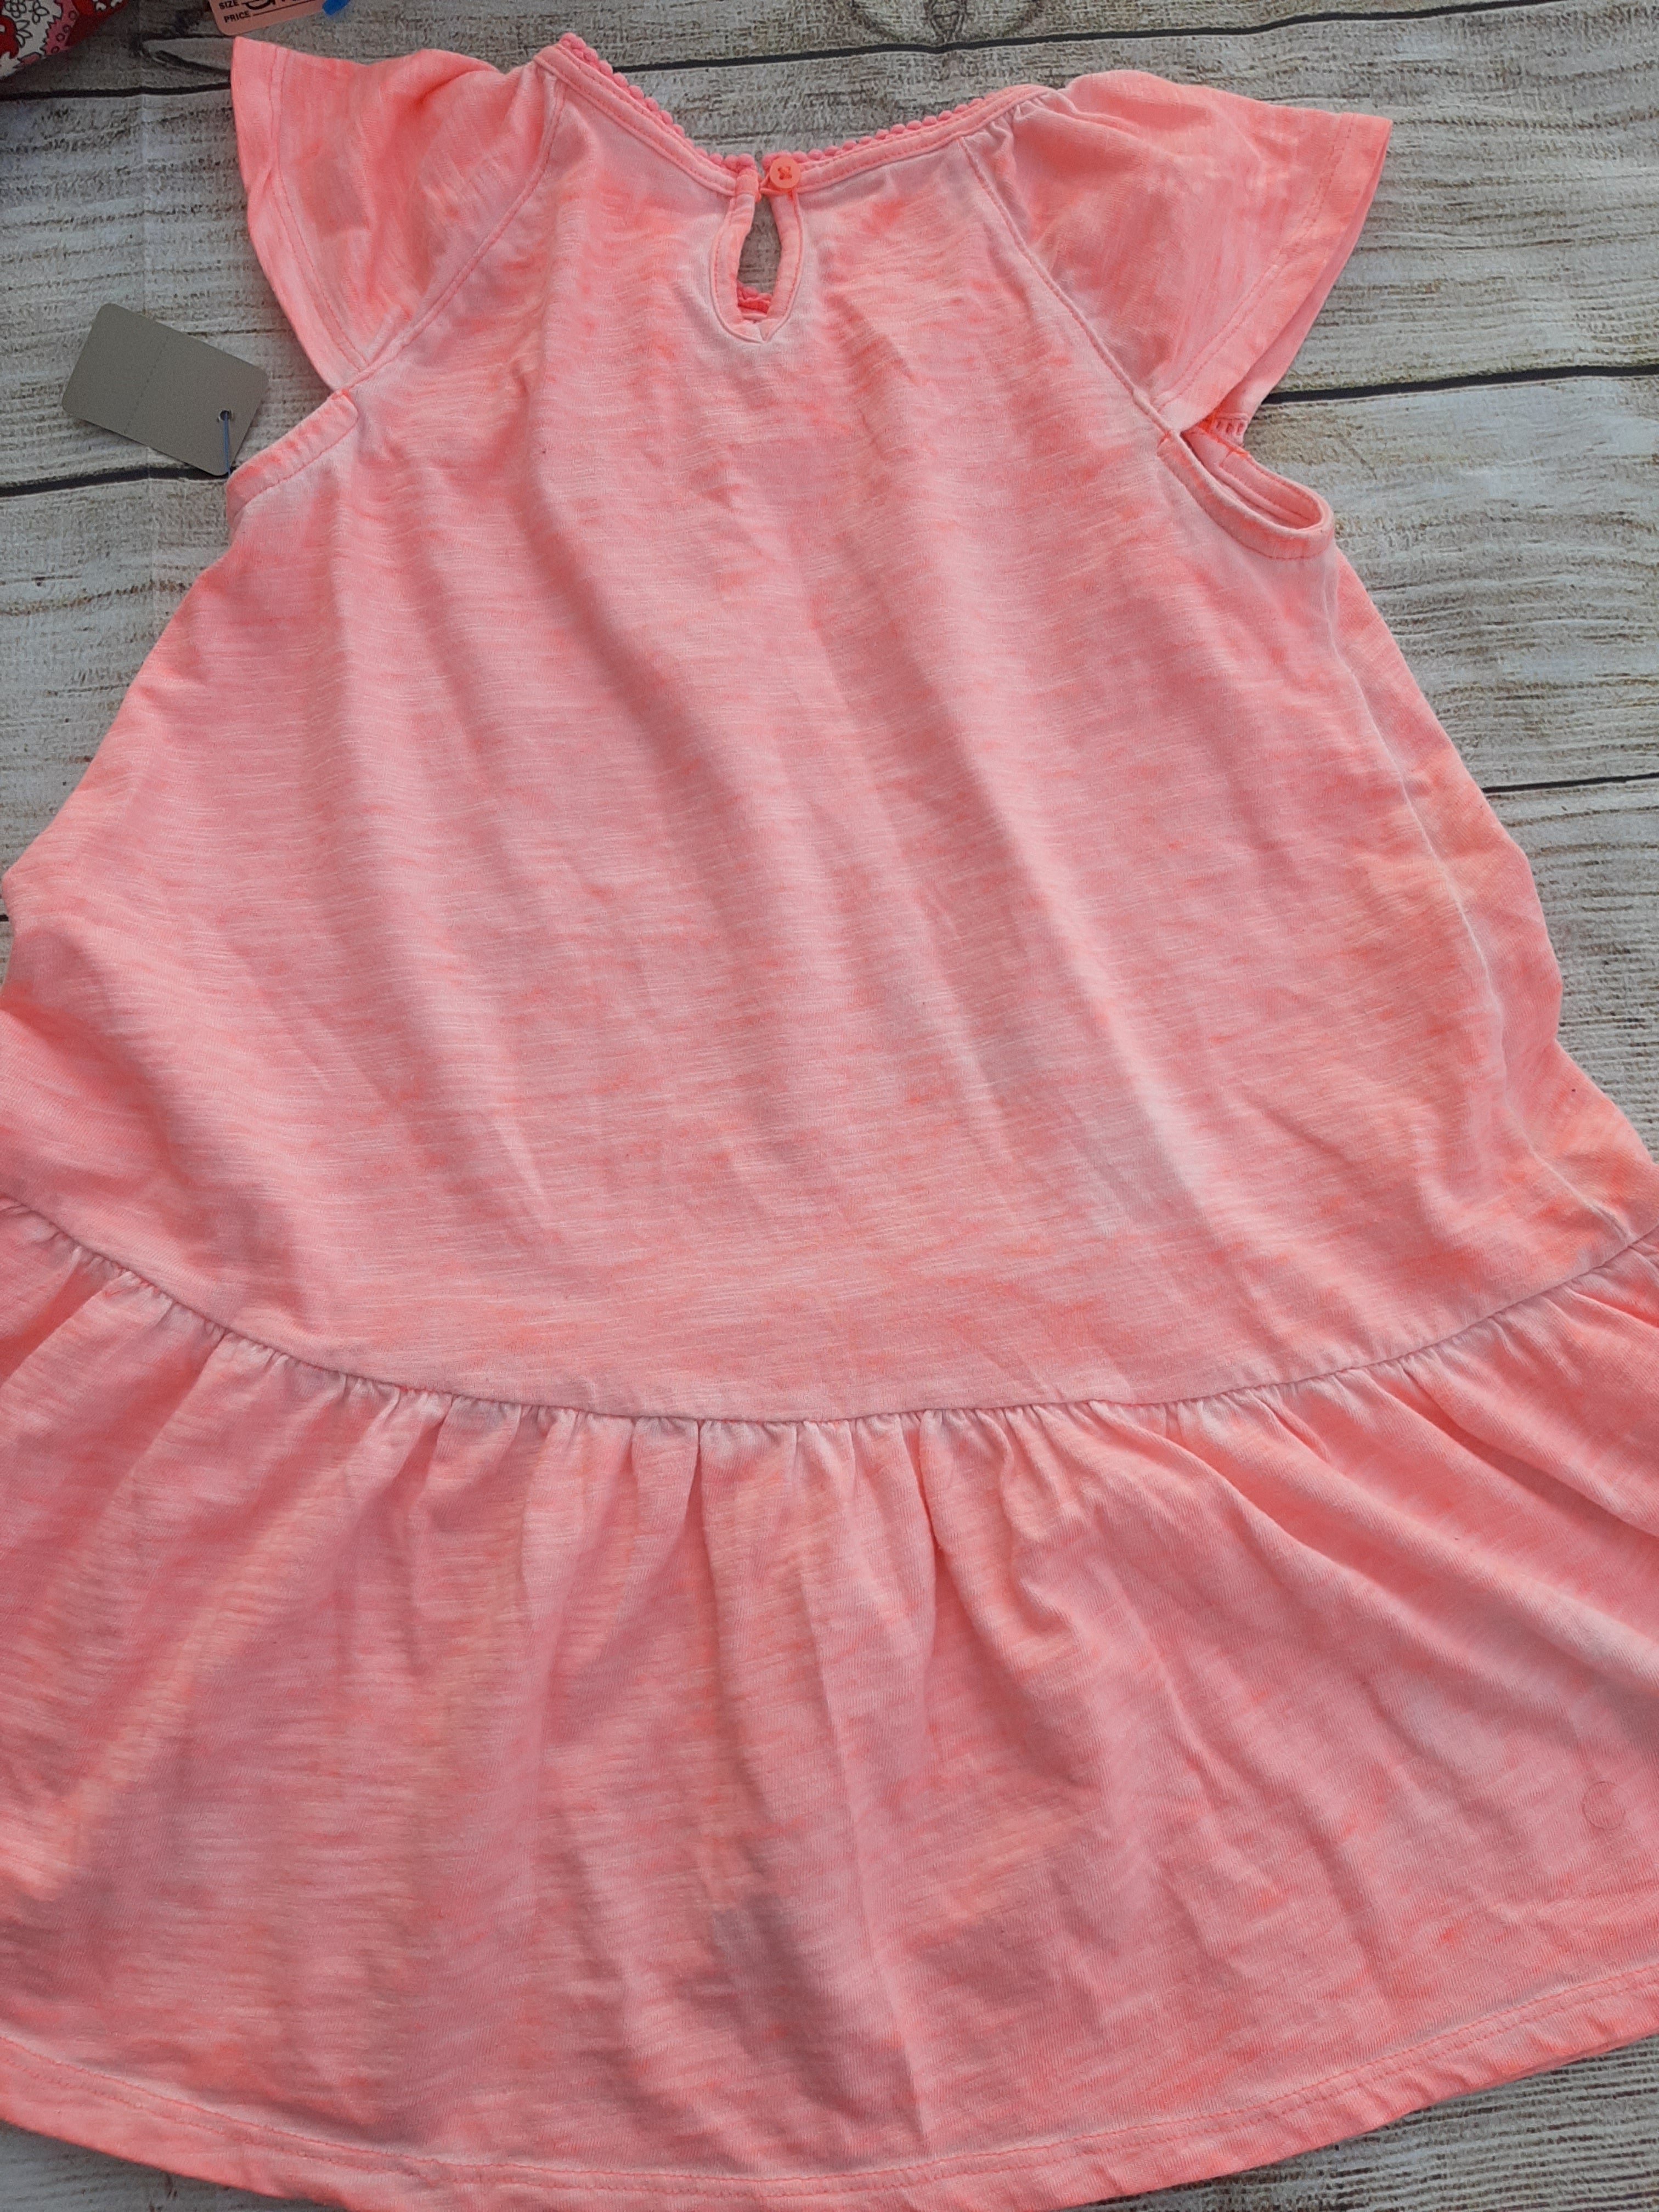 Cherokee Girls Summer Tye-Dye Dress sz 5